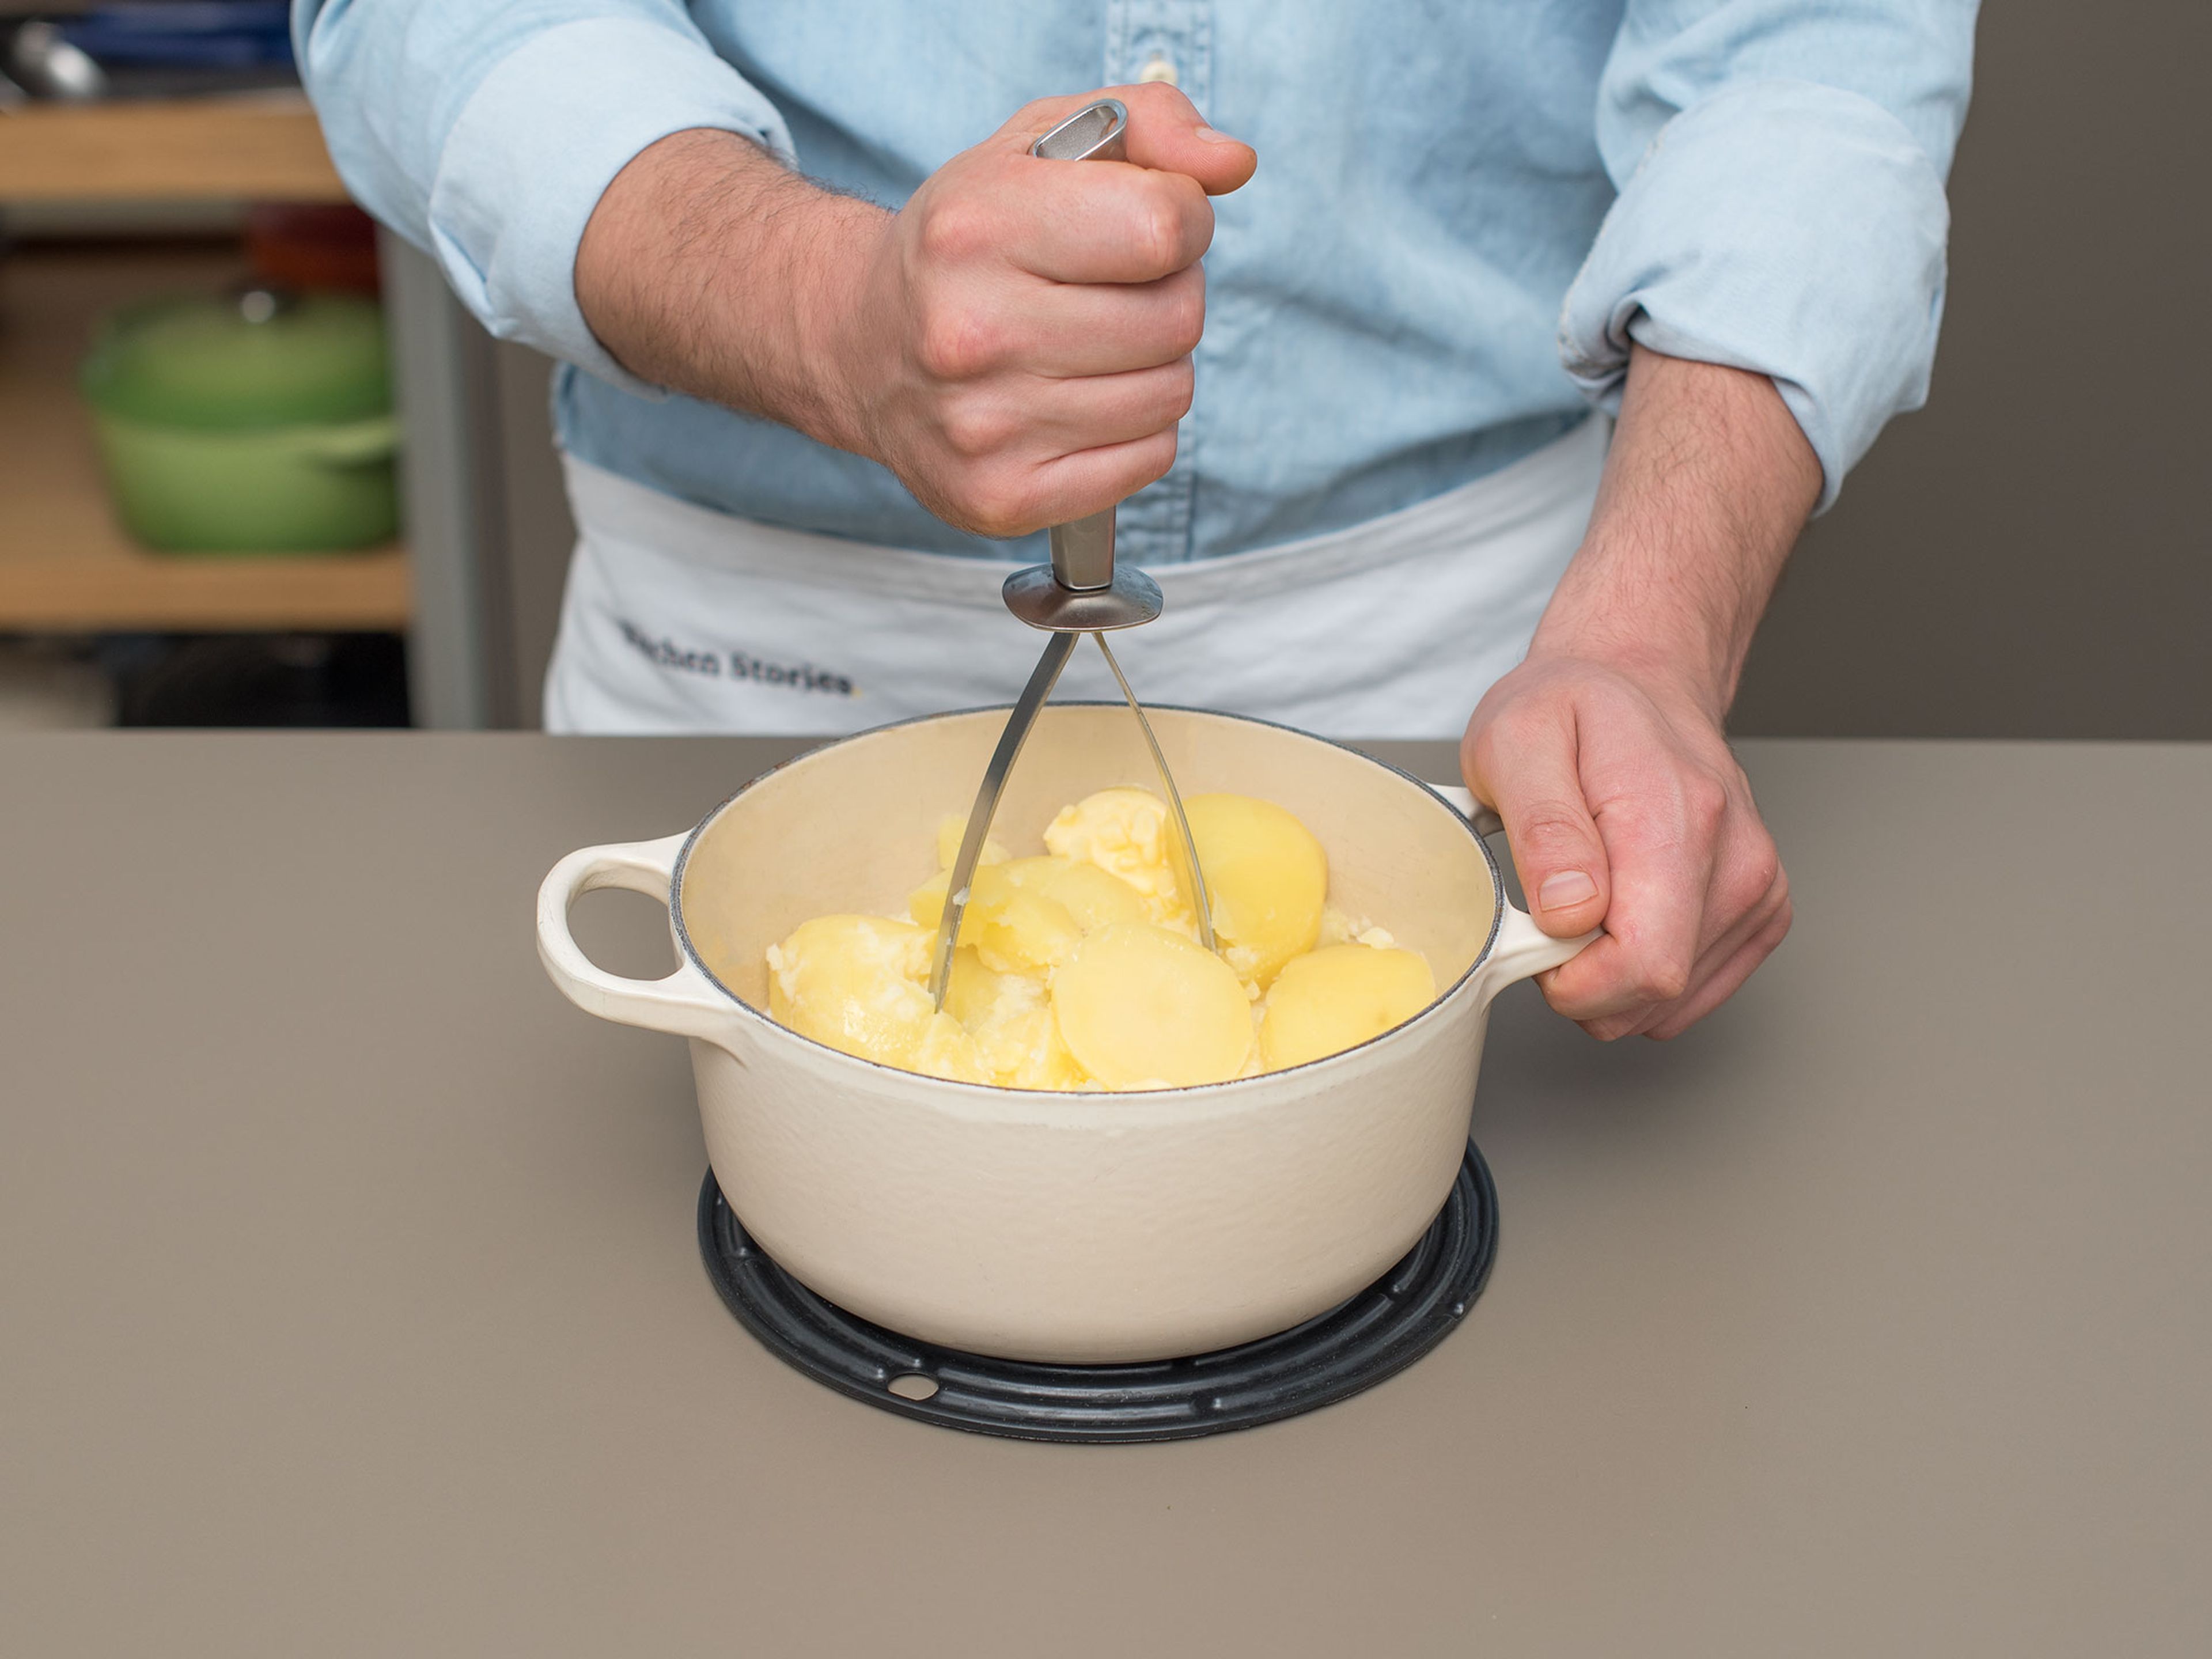 Kartoffeln schälen, klein schneiden und in einen großen Topf geben. Mit Wasser auffüllen bis die Kartoffeln bedeckt sind, das Wasser salzen und zum Kochen bringen. Auf mittlerer Hitze ca. 20 Min. kochen, oder bis die Kartoffeln weich sind. Wasser abgießen. Butter und Milch zu den Kartoffeln geben und bis zur gewünschten Cremigkeit stampfen. Mit Muskat, Salz und Pfeffer abschmecken. Bis zum Servieren warm halten.